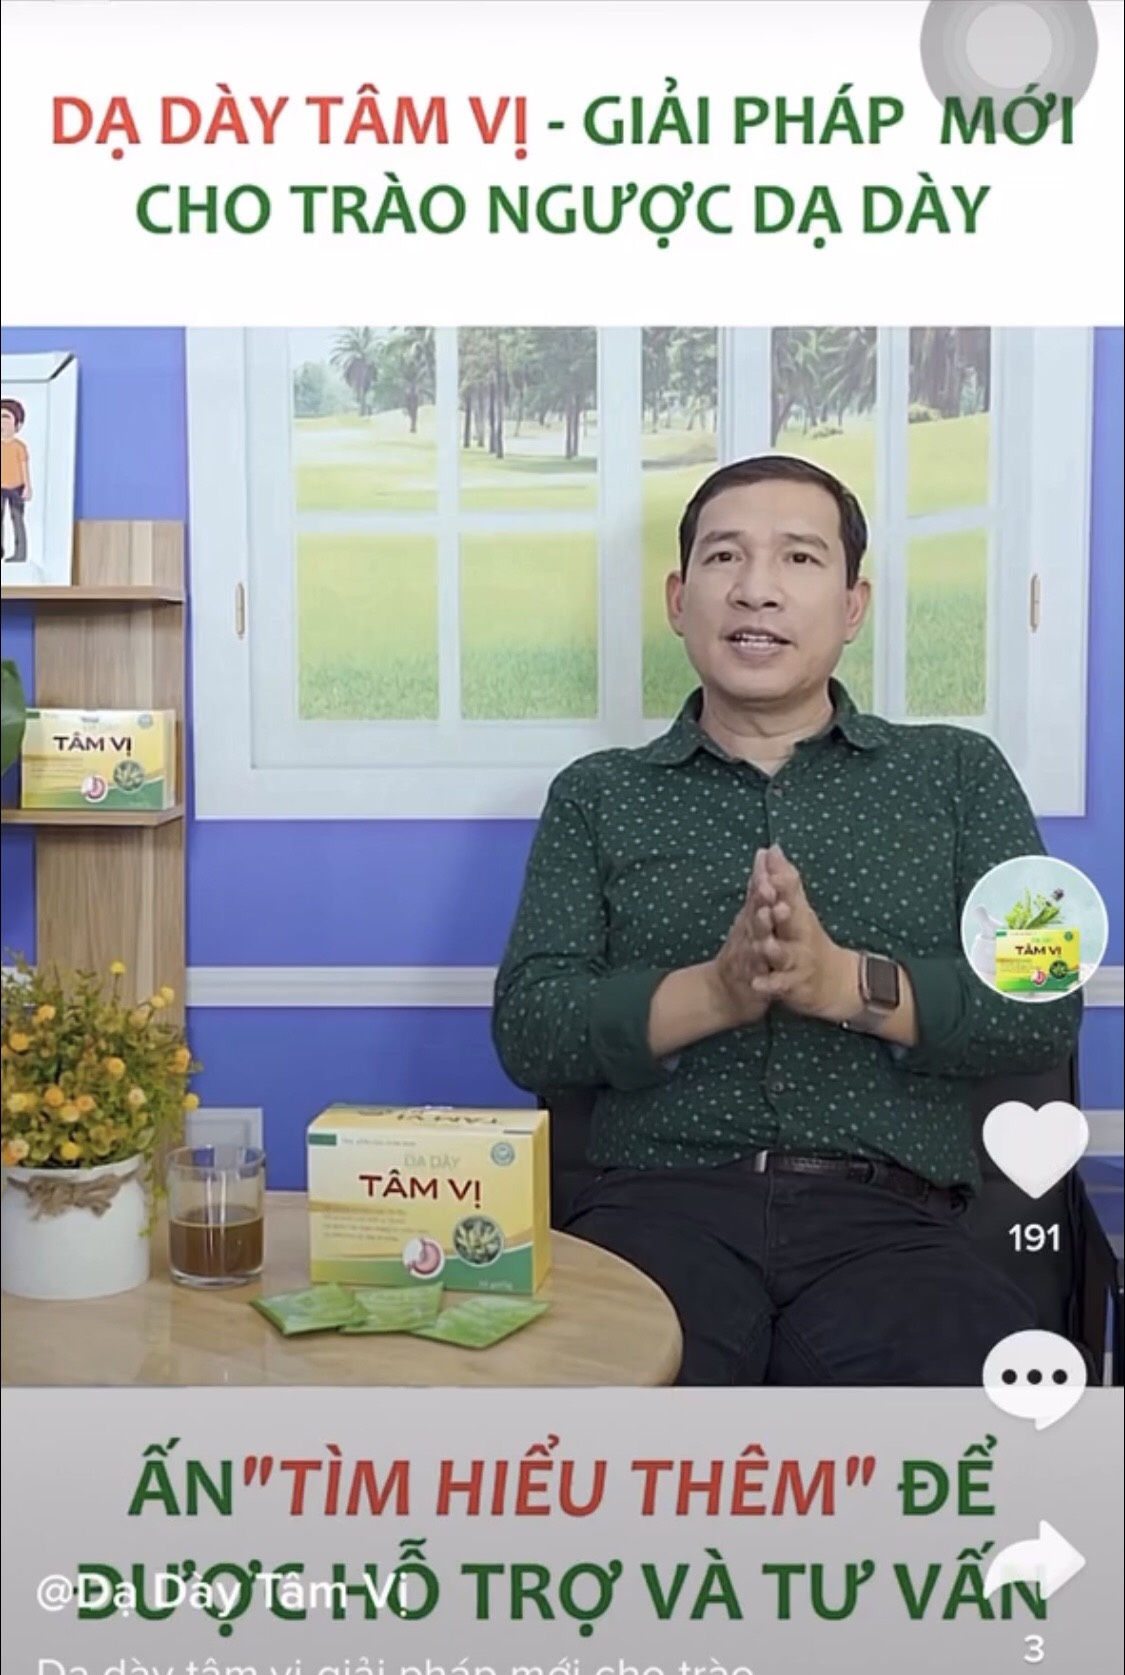 Nghệ sĩ Quang Thắng, Quách Thu Phương có đang 'tiếp tay' cho sản phẩm quảng cáo sai phạm?